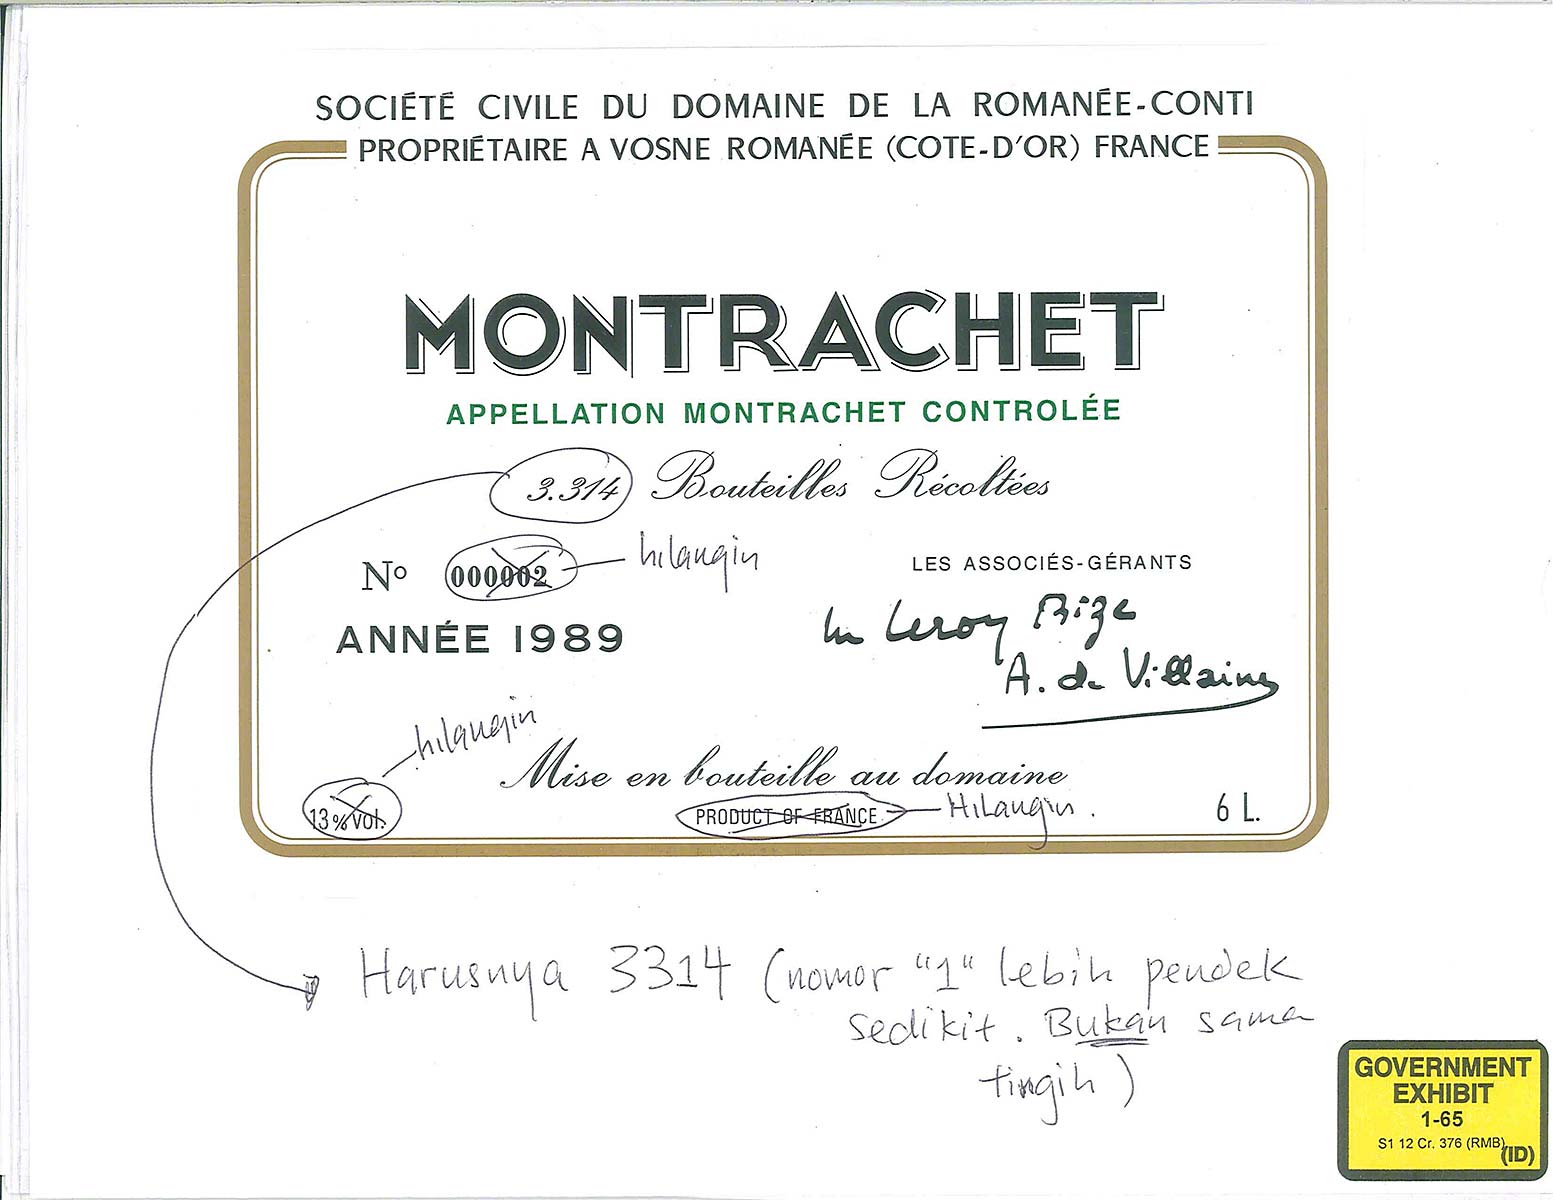 1989-DRC-Montrachet-Template-Notes-1-651